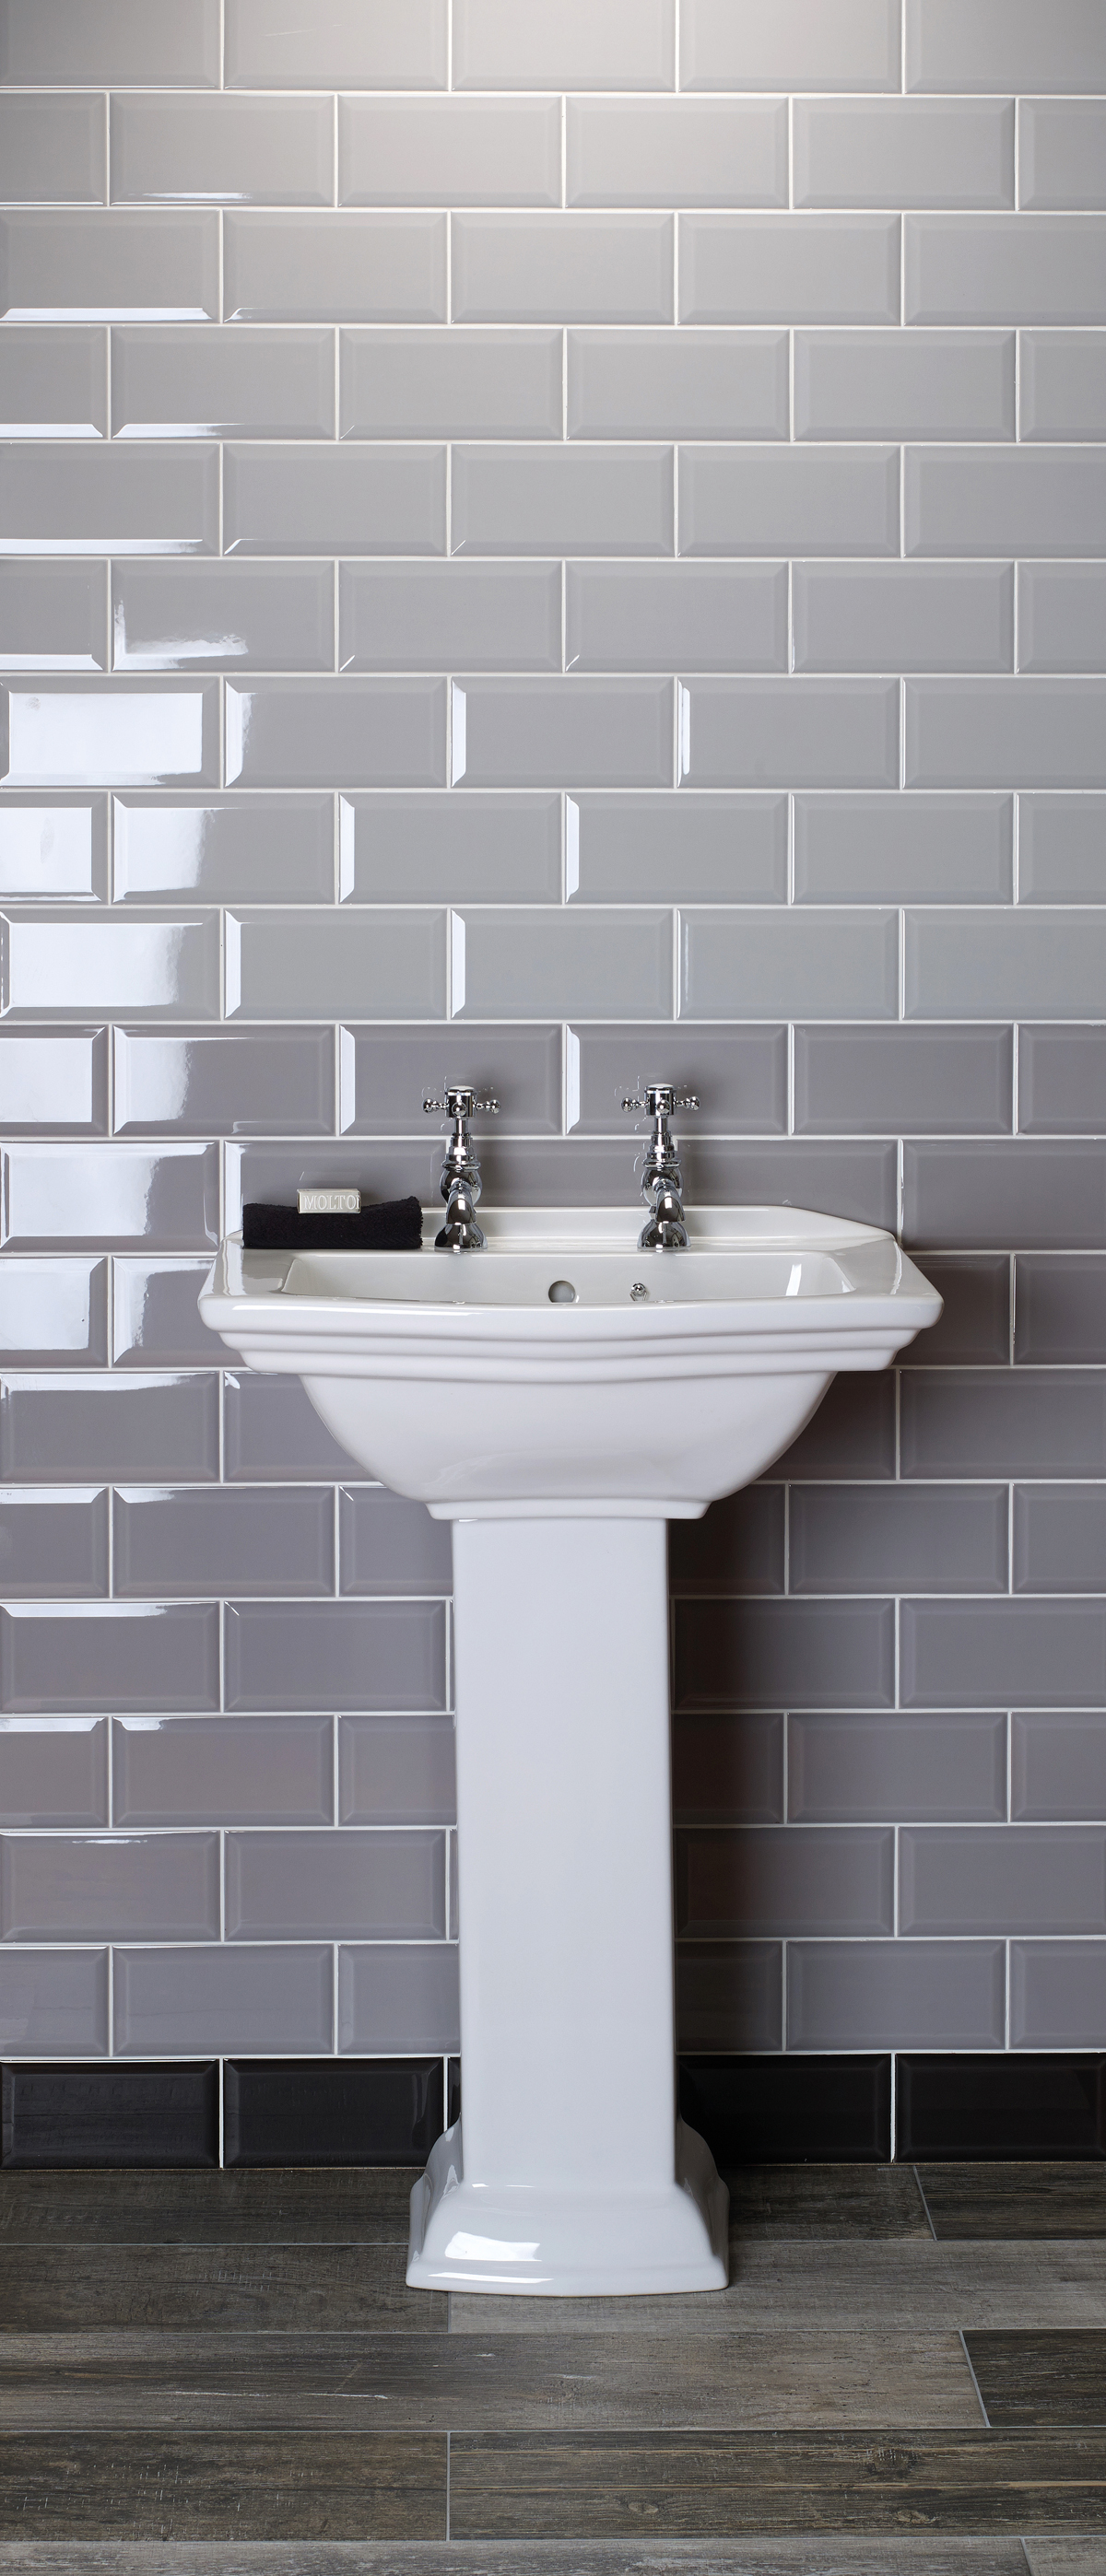 Metro Ambience Arctic Grey Brick Shaped, Grey Metro Tile Bathroom Ideas